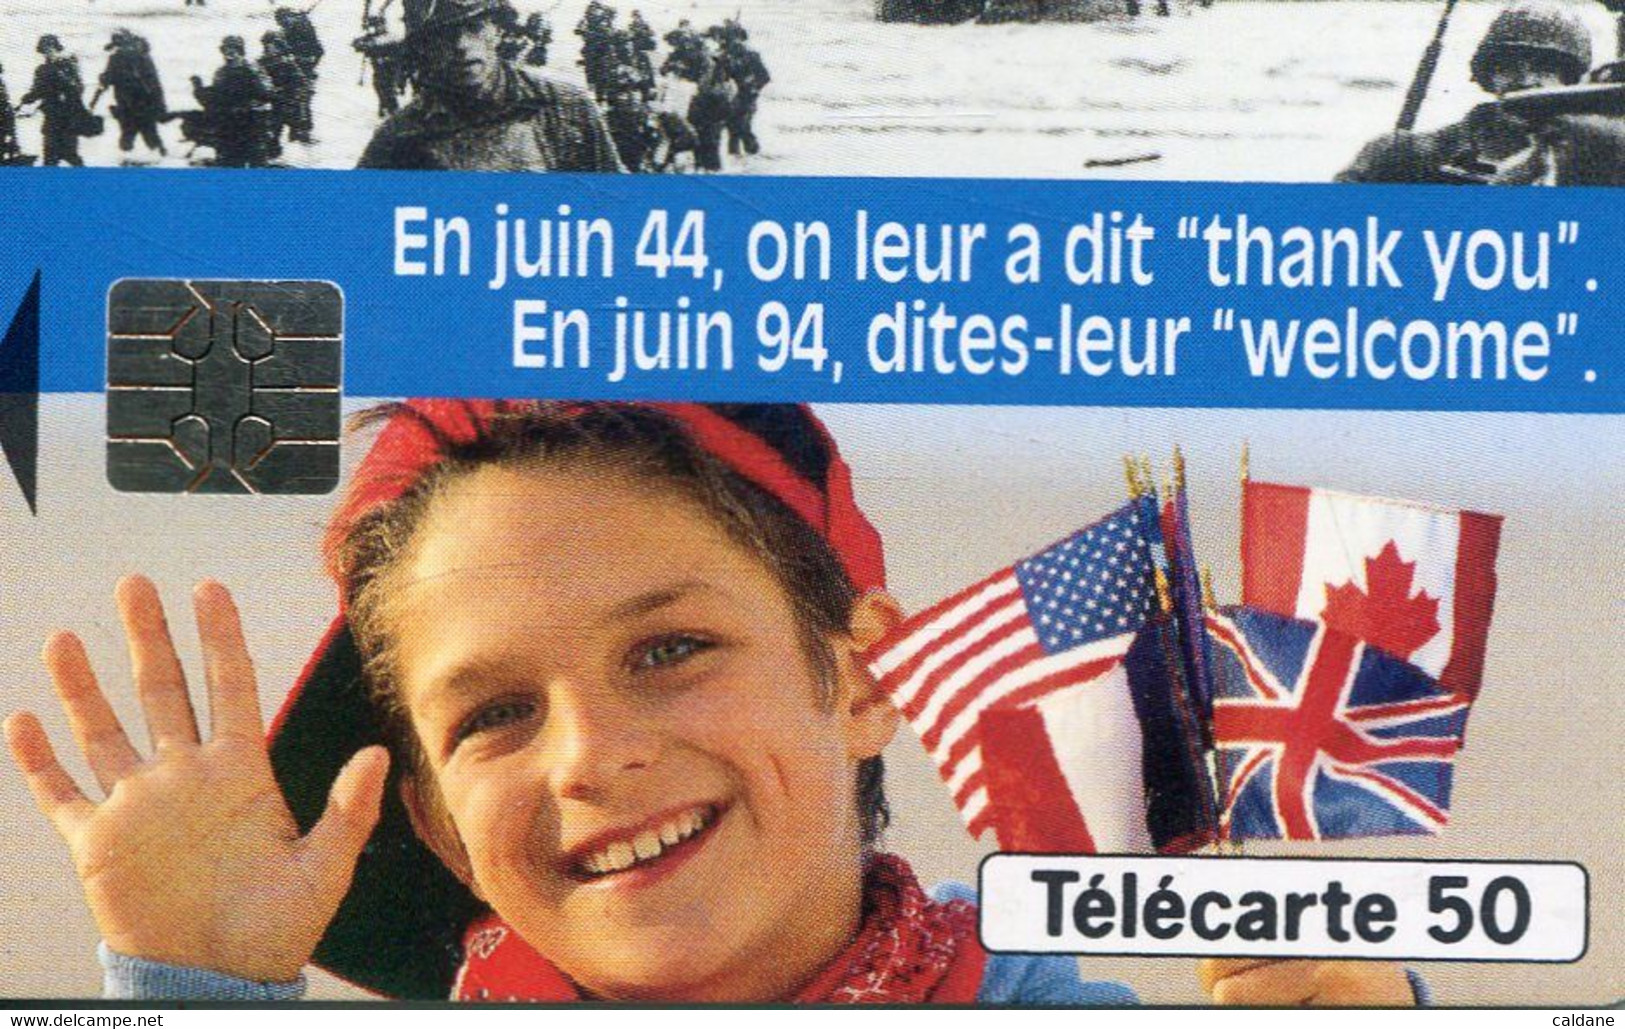 TELECARTE  France Telecom  50 UNITES 600.000 Ex.   1994 - Telekom-Betreiber